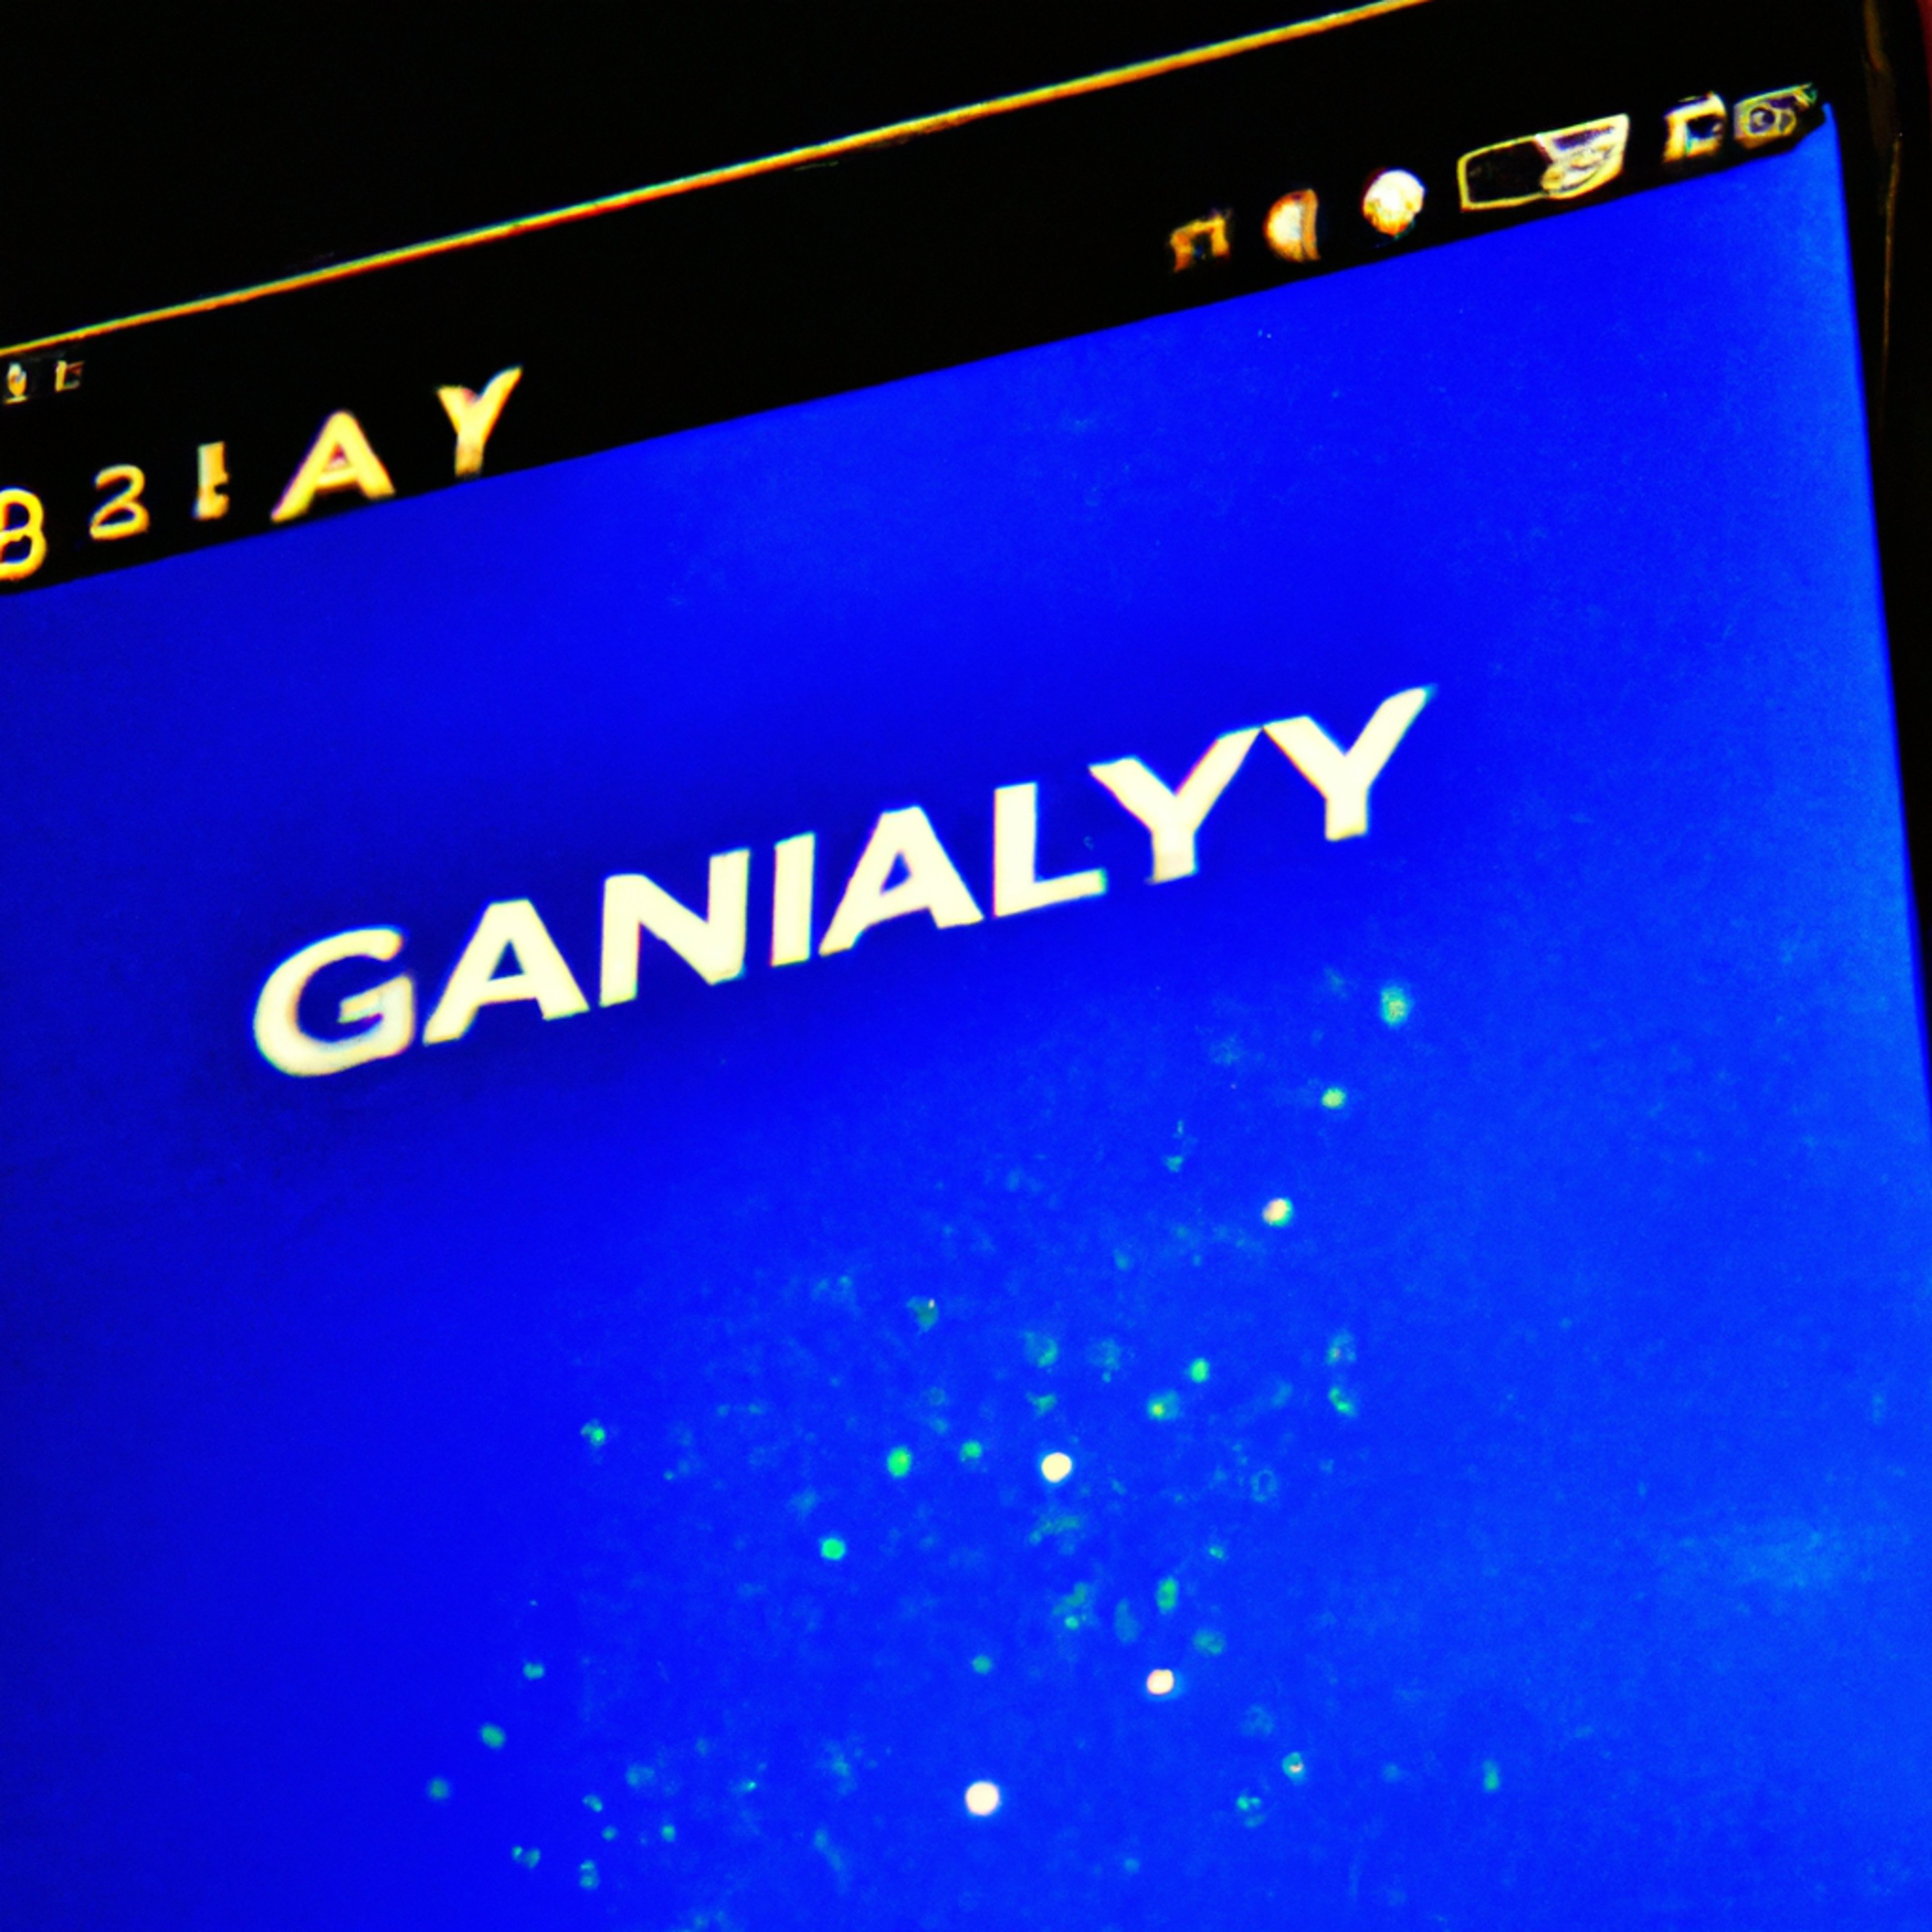 Galaxy Digital Posts $1 Billion Loss For 2022, Reports Profit In Q1’23